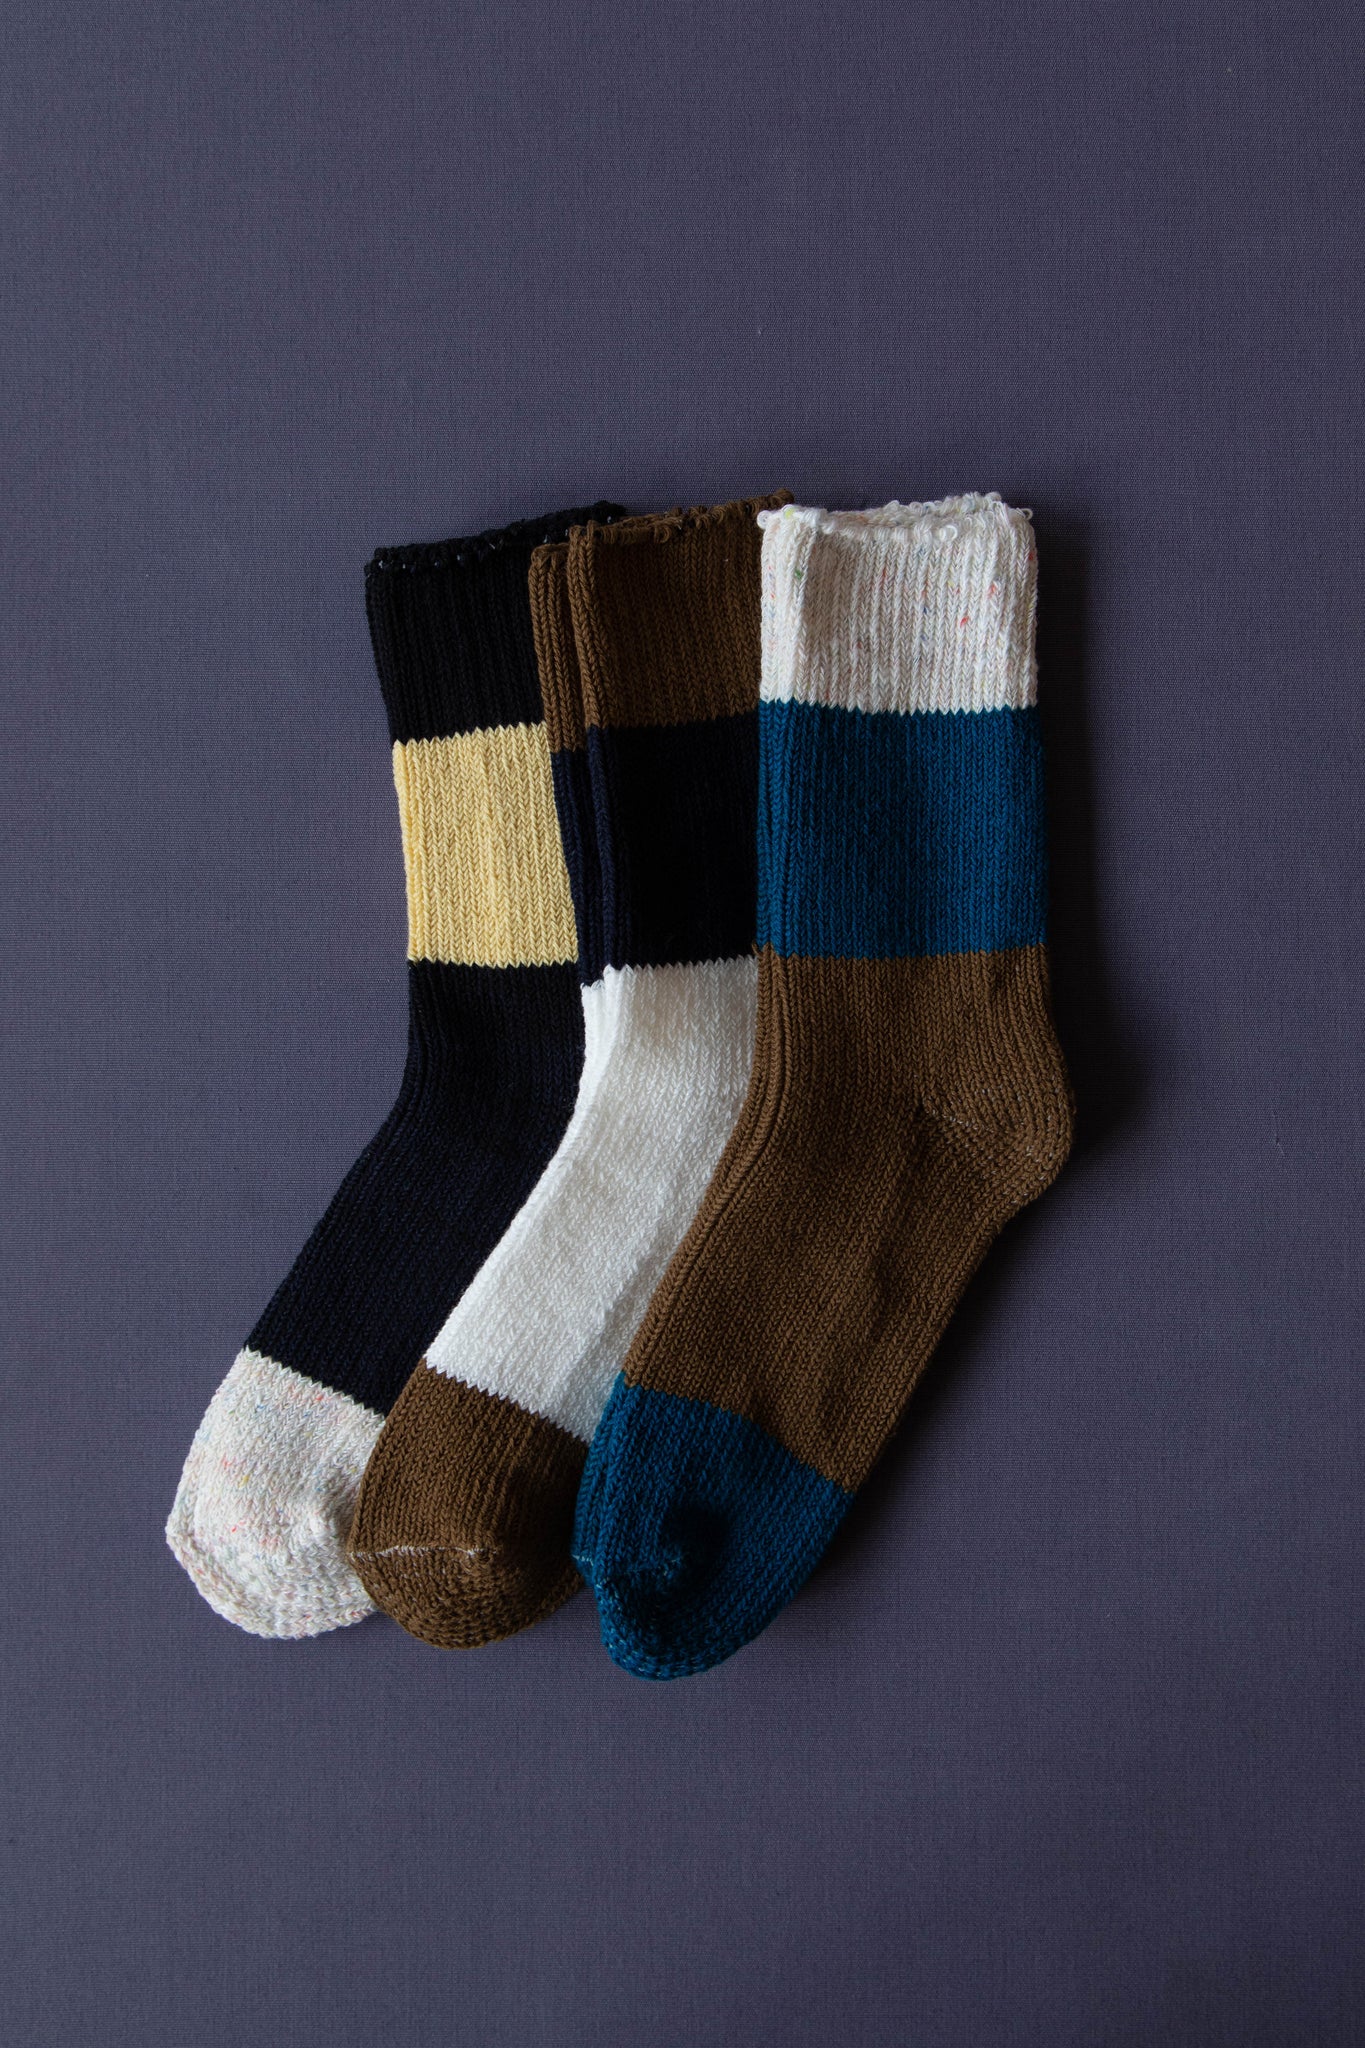 Aseedonclöud | Socks in Black & Buttercup